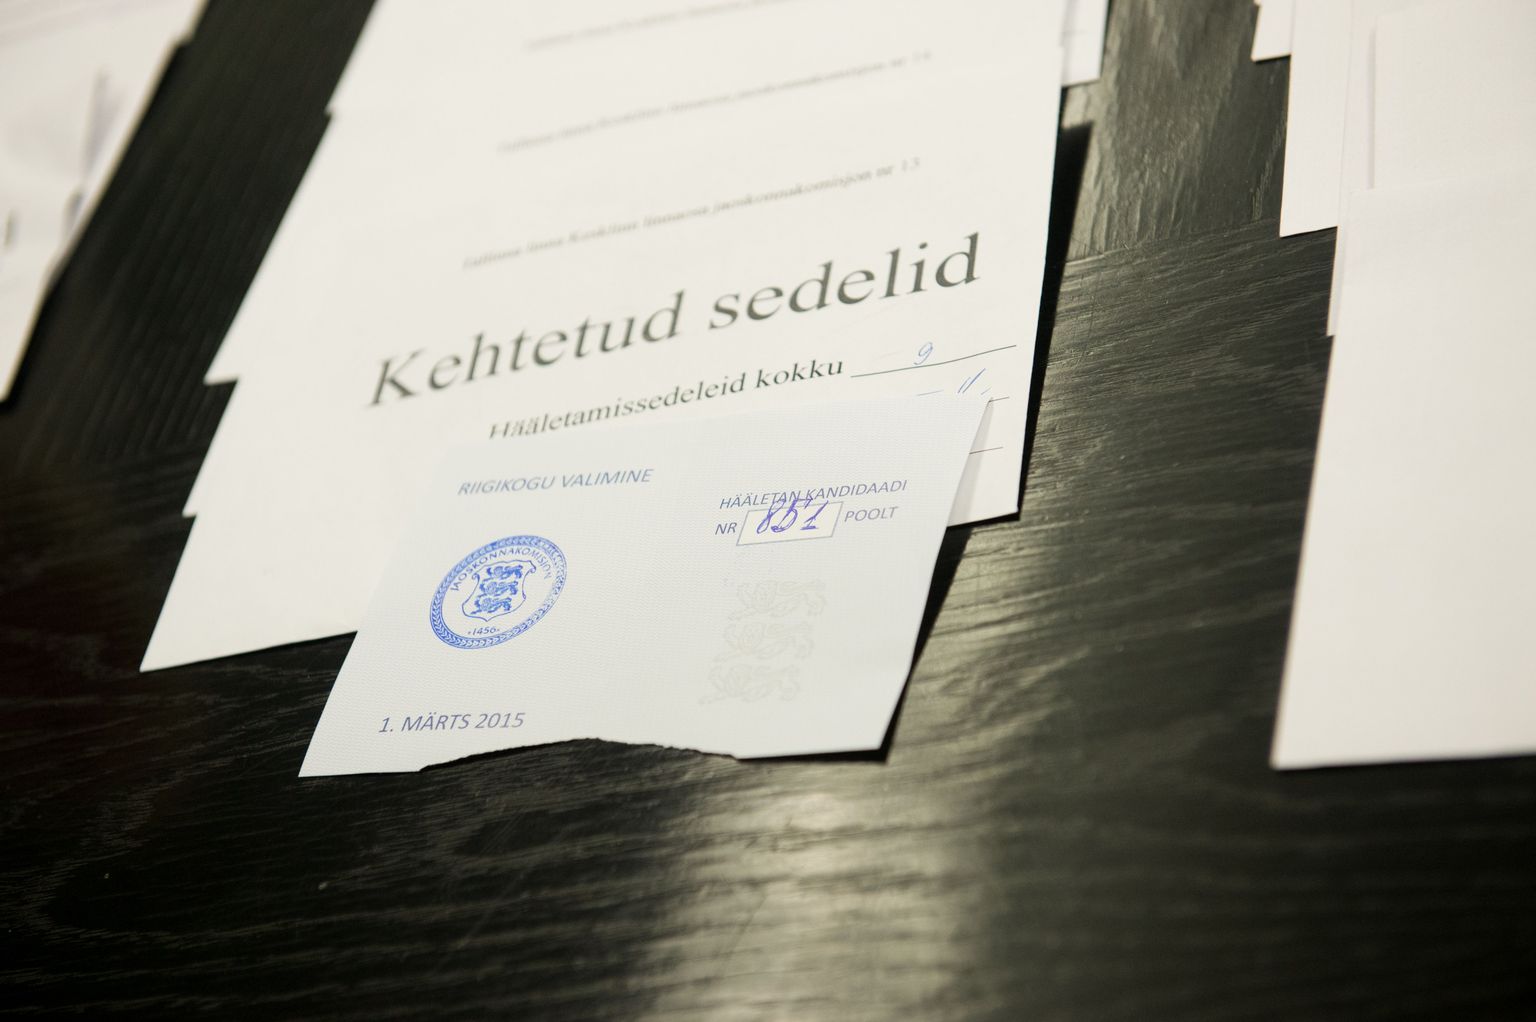 Tallinna valimiskomisjon luges kokku üle 800 rikutud valimissedeli.